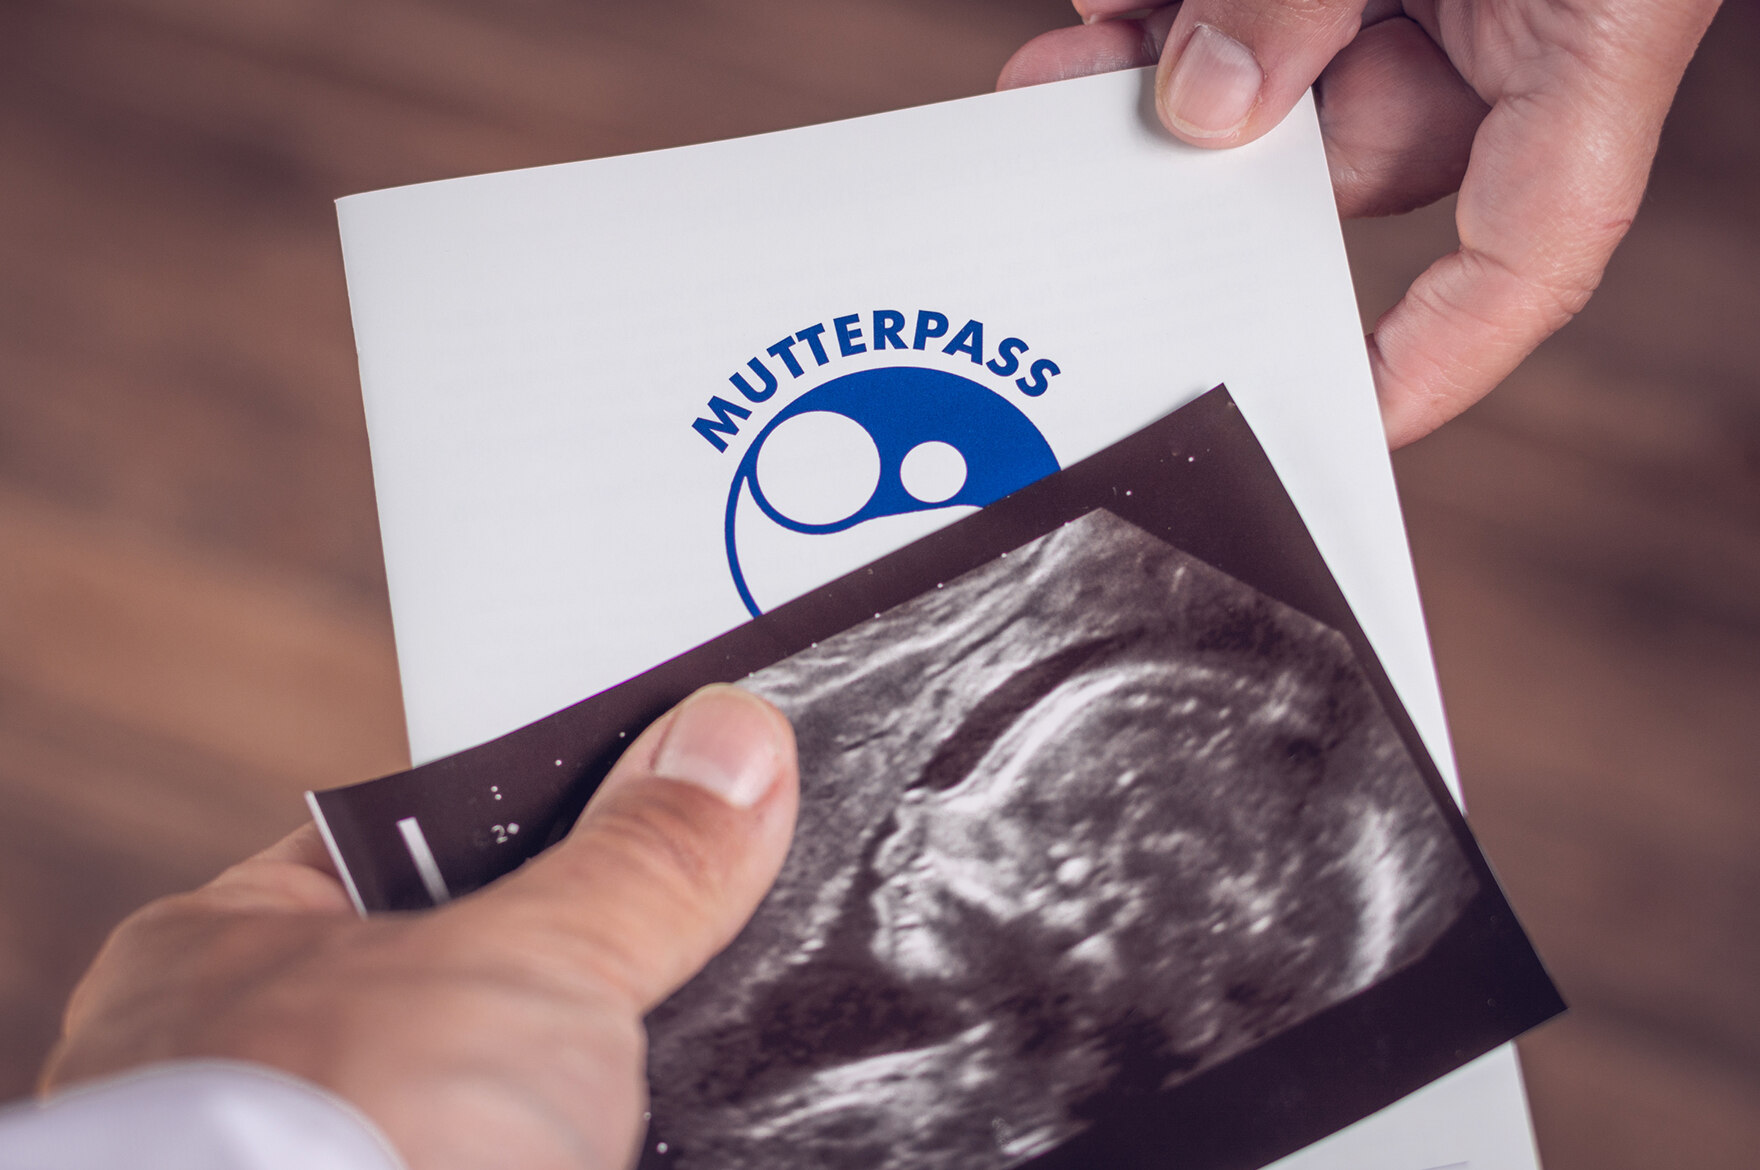 Mutterpass und Ultraschallbild werden von einer Hand in eine andere weitergereicht